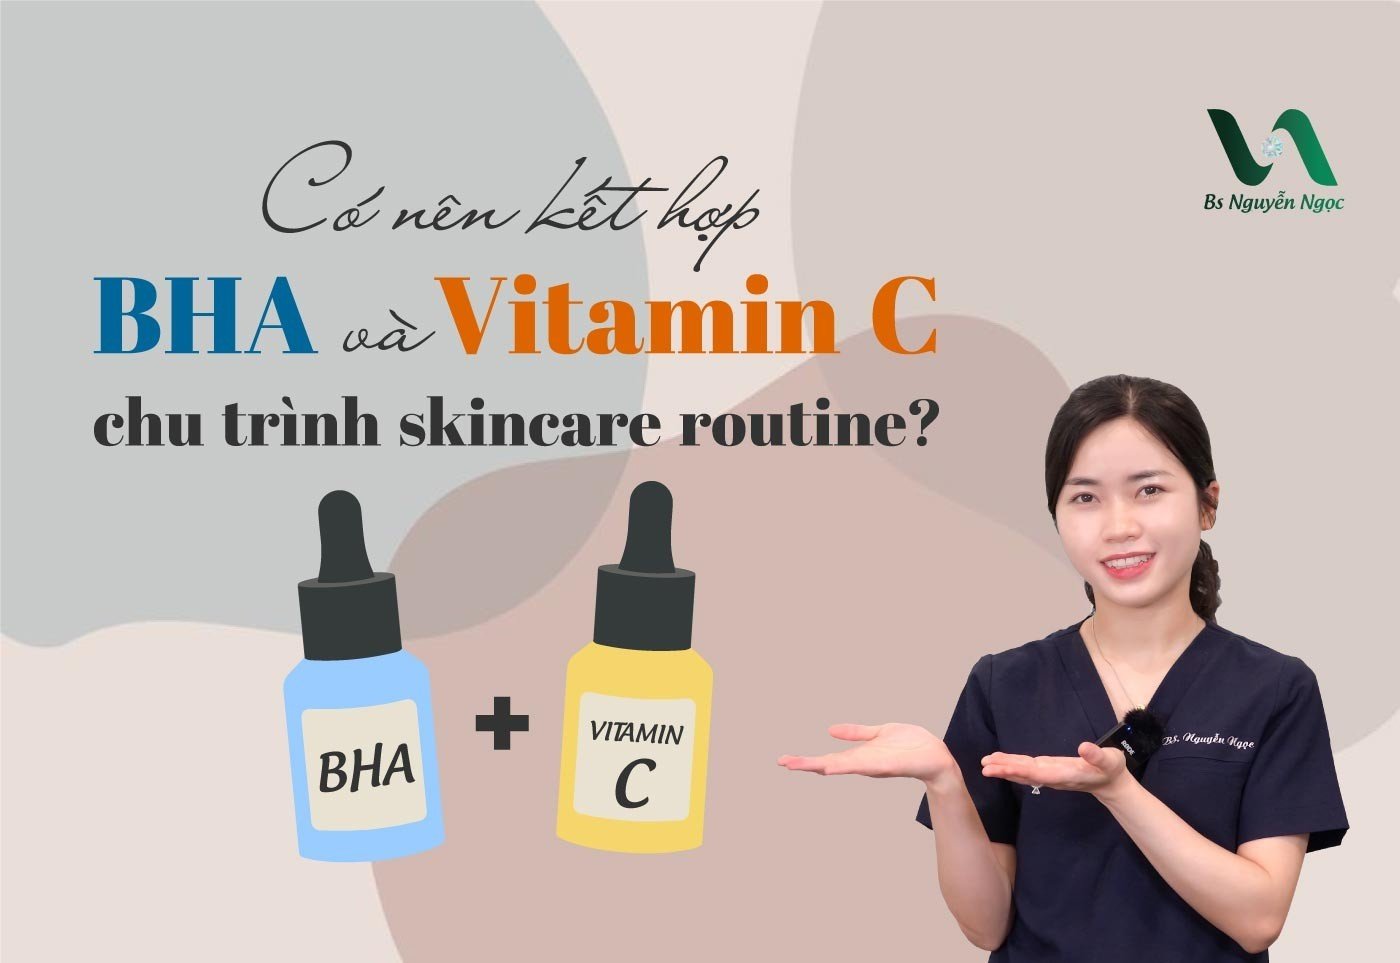 Có nên kết hợp BHA và Vitamin C chu trình skincare routine?